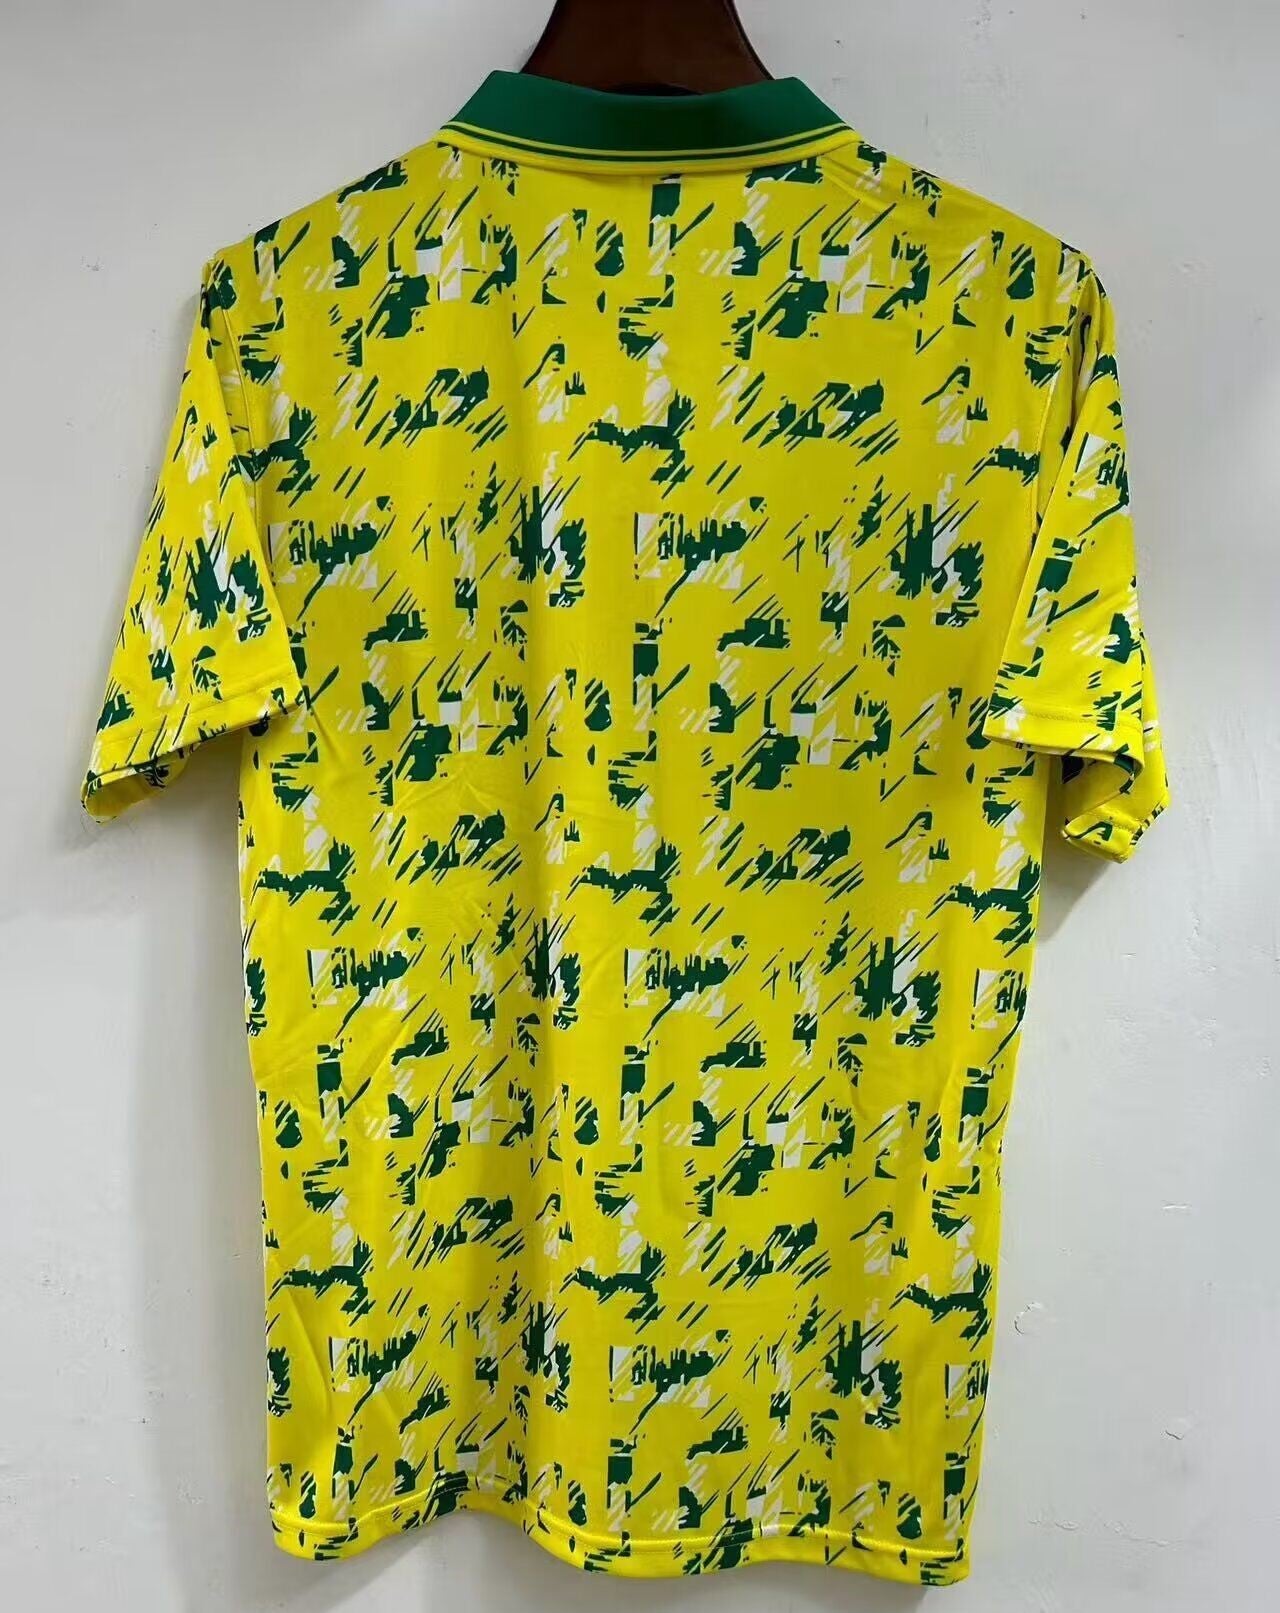 Norwich City. Camiseta local 1992-1994